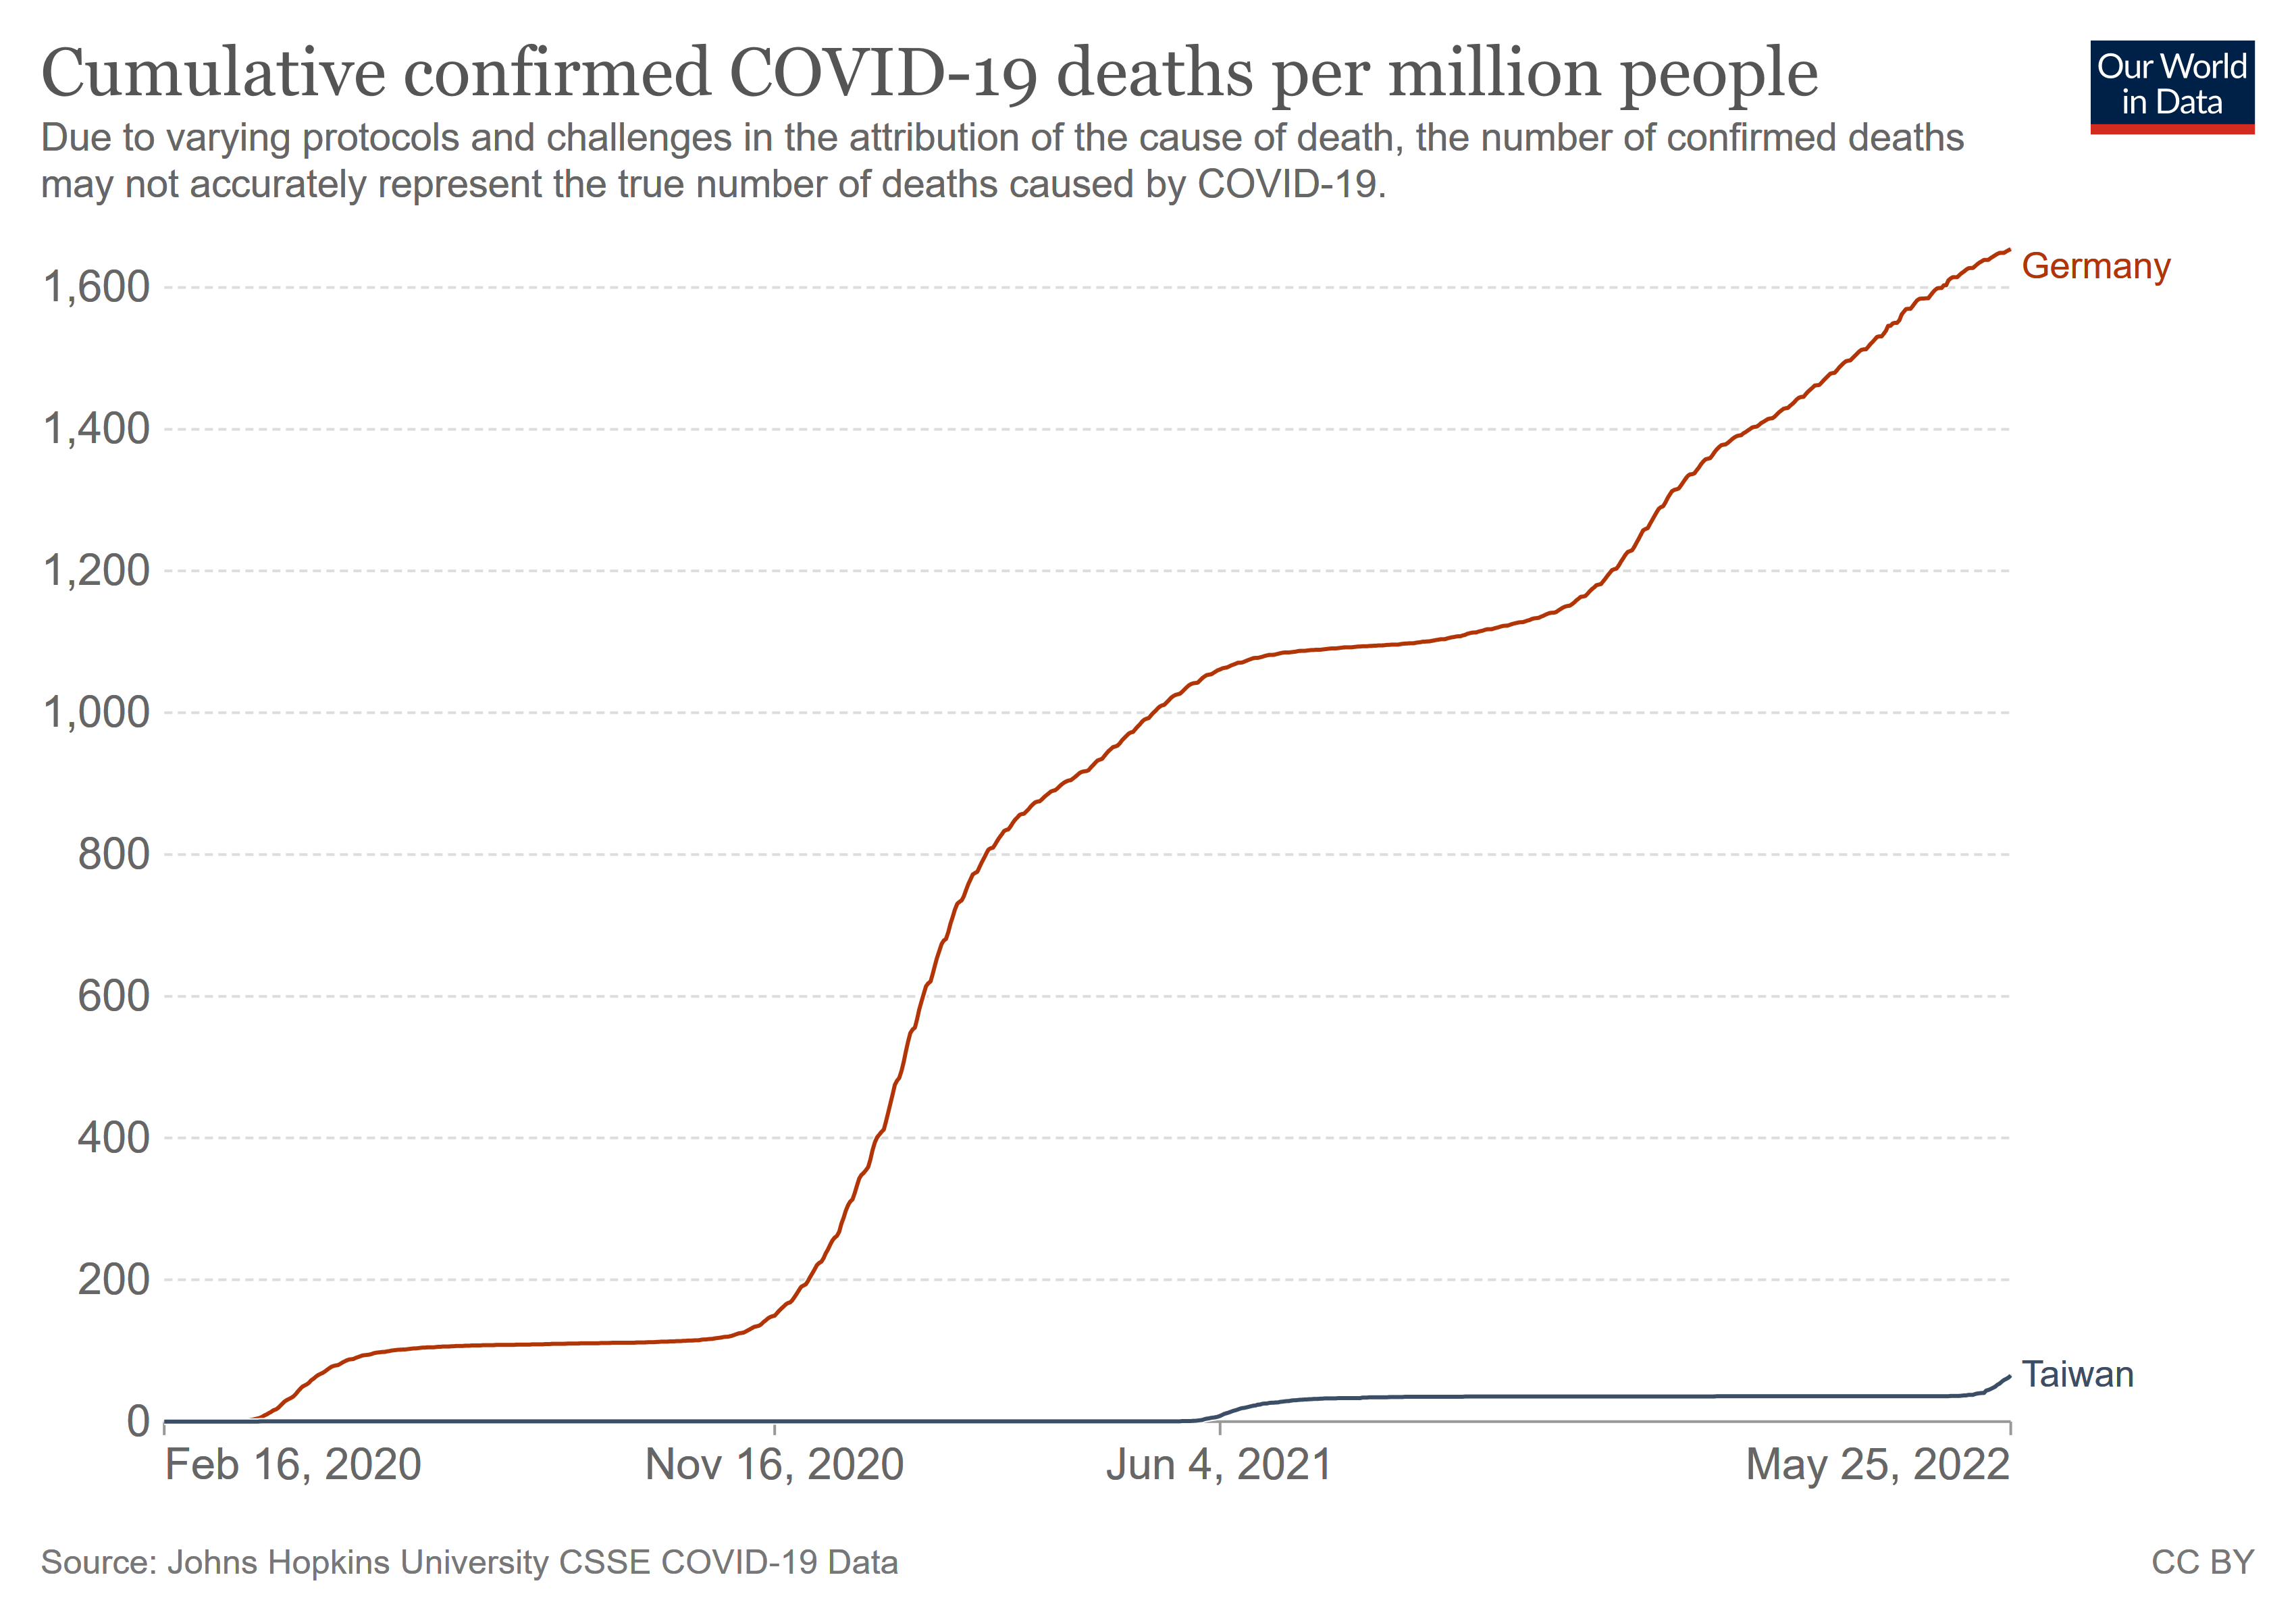 Veraufskurve der Todesfälle in der Corona-Pandemie in Deutschland und Taiwan